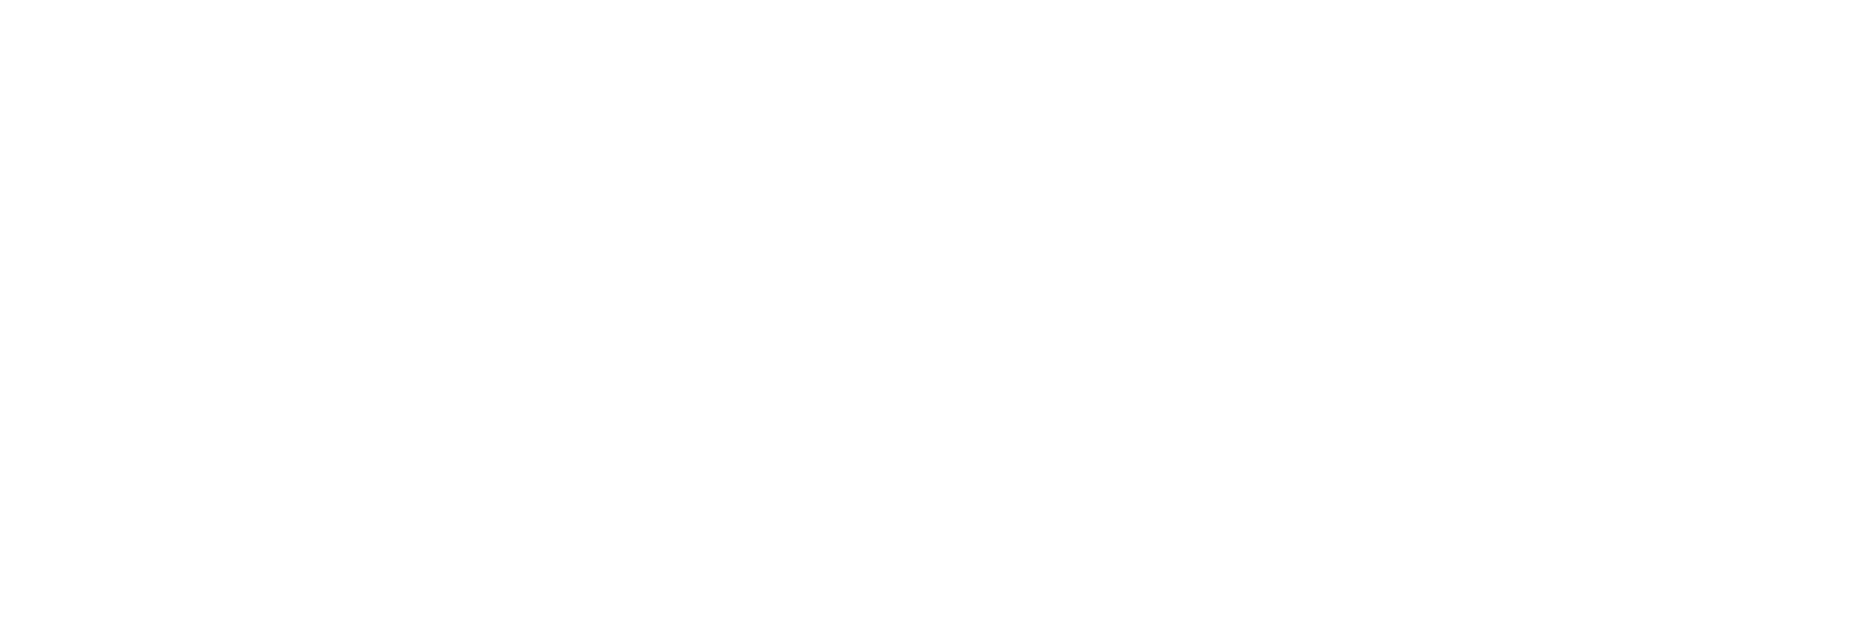 埼玉YMCA